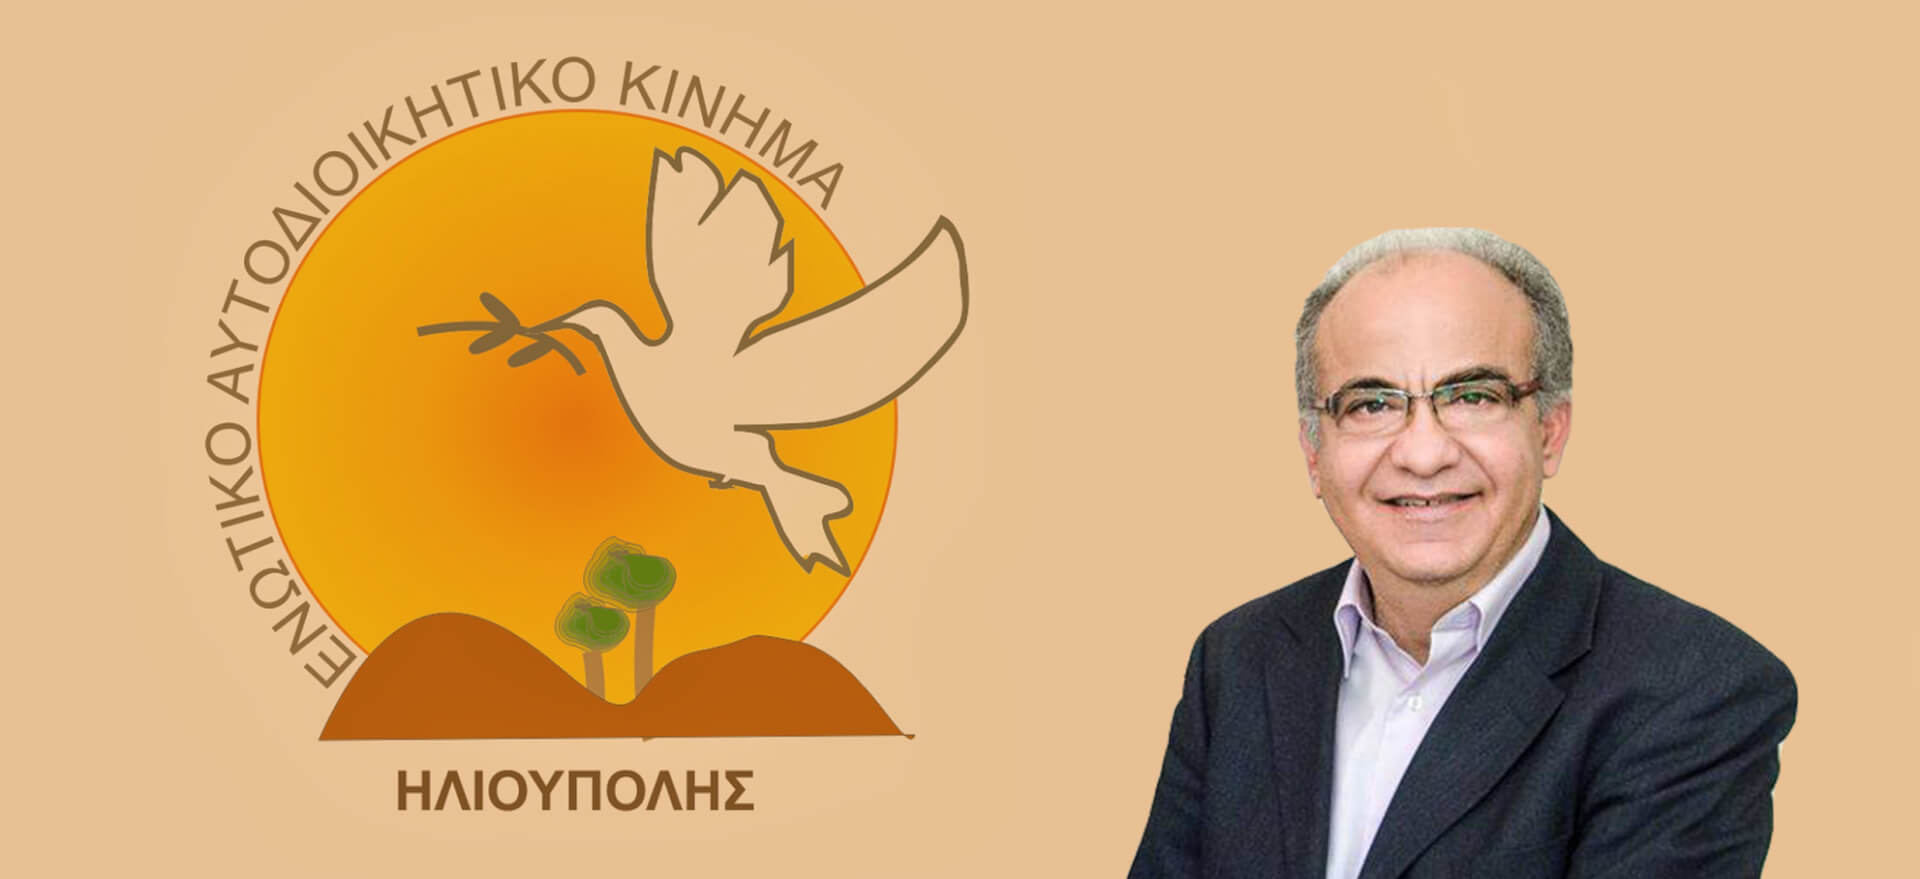 Υποψήφιος Βουλευτής Με Το ΚΙΝ.ΑΛ Ο Δημήτρης Πανταζόπουλος – Τι Θα Γίνει Με Το ΕΝΑΚ;